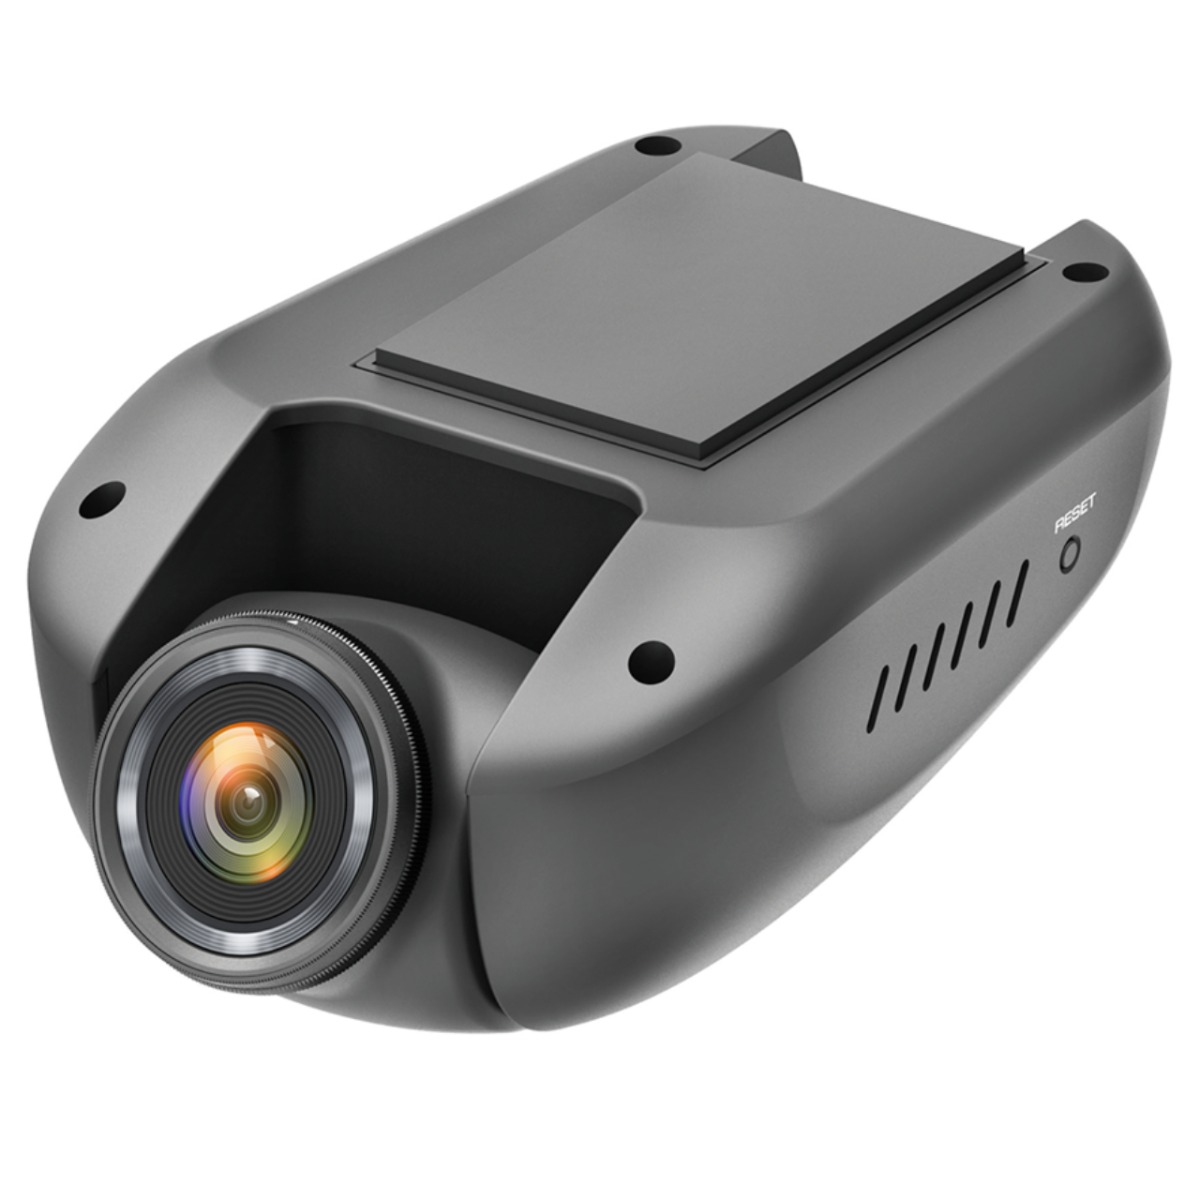 Kenwood DRV-A700W Kamera za automobil sa kamerom od 3.7 Mpx. Snima u Quad HD (2560x1440) rezoluciji i obezbeđuje dokazni materijal u slučaju udesa. 